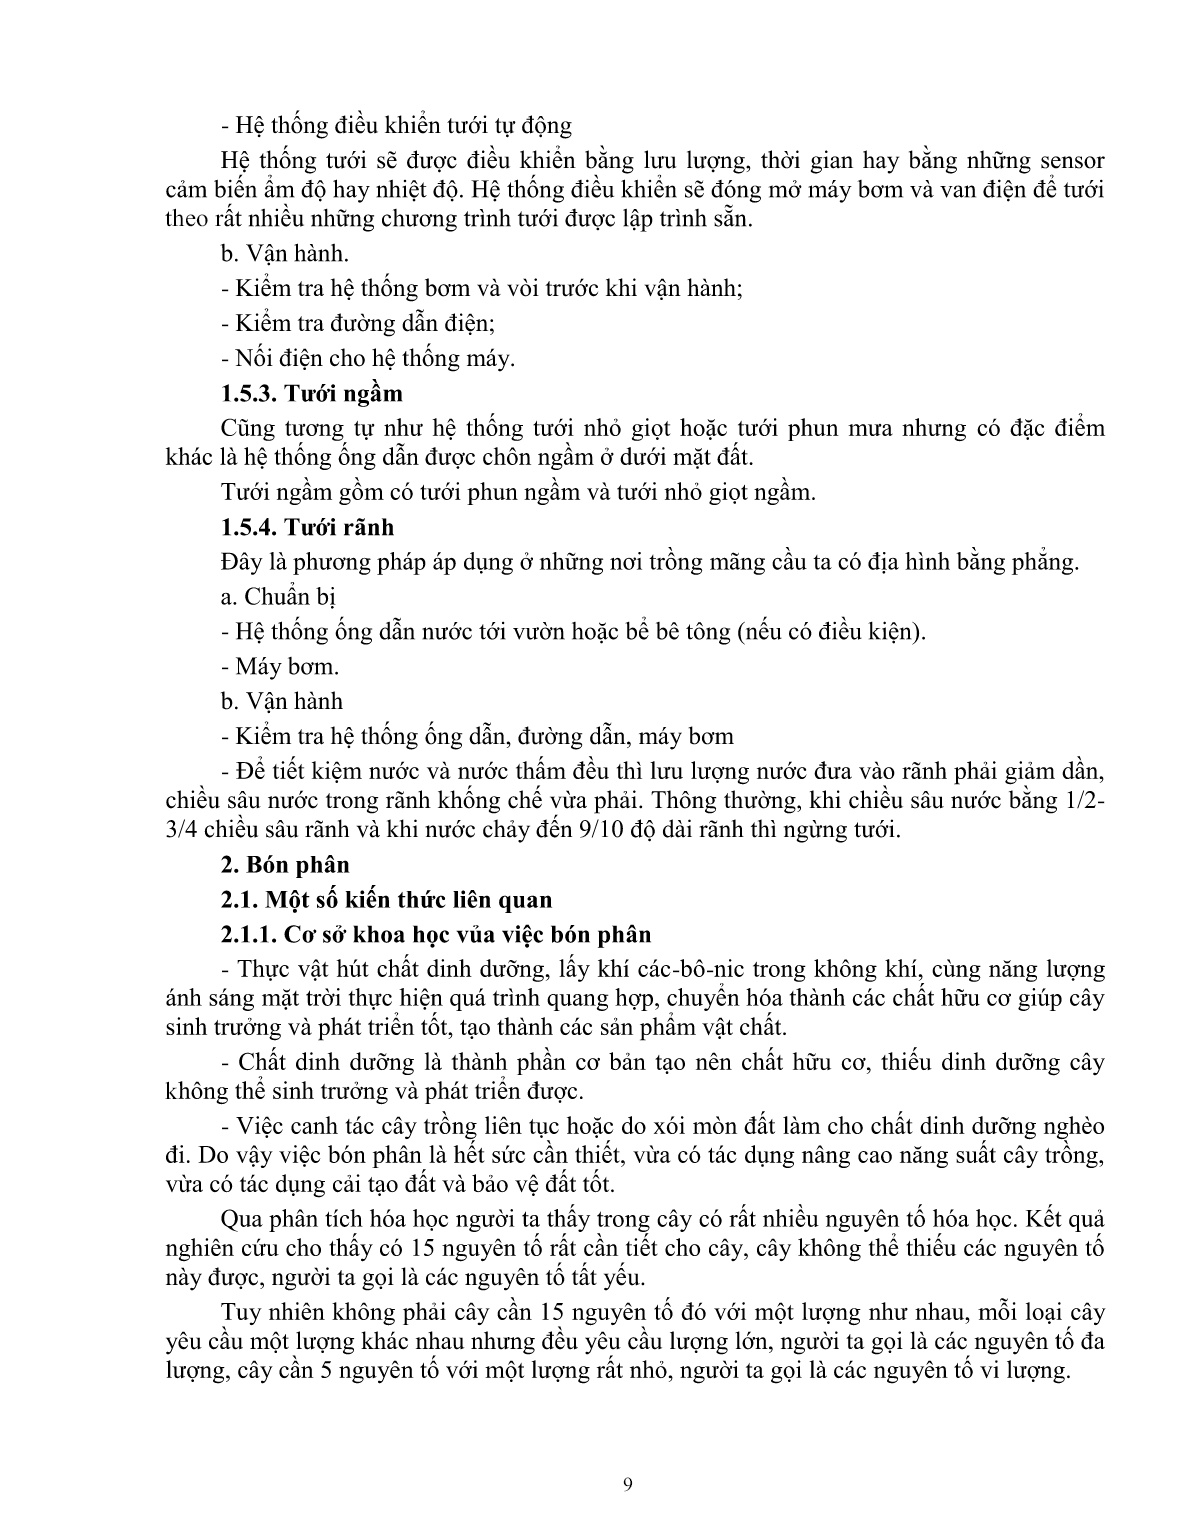 Giáo trình mô đun Chăm sóc cây mãng cầu ta (Trình độ: Đào tạo dưới 03 tháng) trang 10